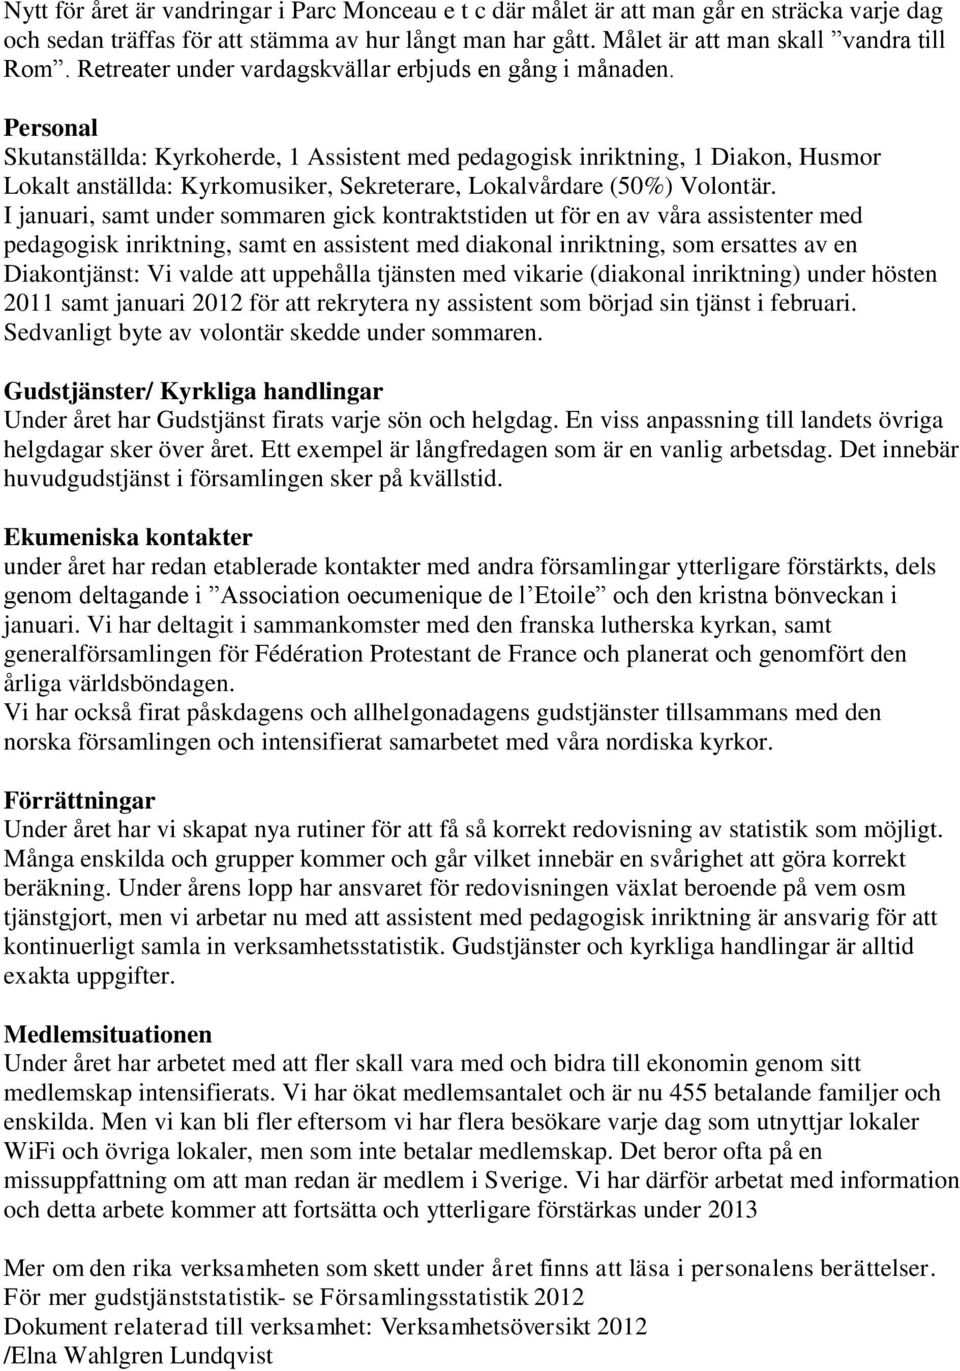 Personal Skutanställda: Kyrkoherde, 1 Assistent med pedagogisk inriktning, 1 Diakon, Husmor Lokalt anställda: Kyrkomusiker, Sekreterare, Lokalvårdare (50%) Volontär.